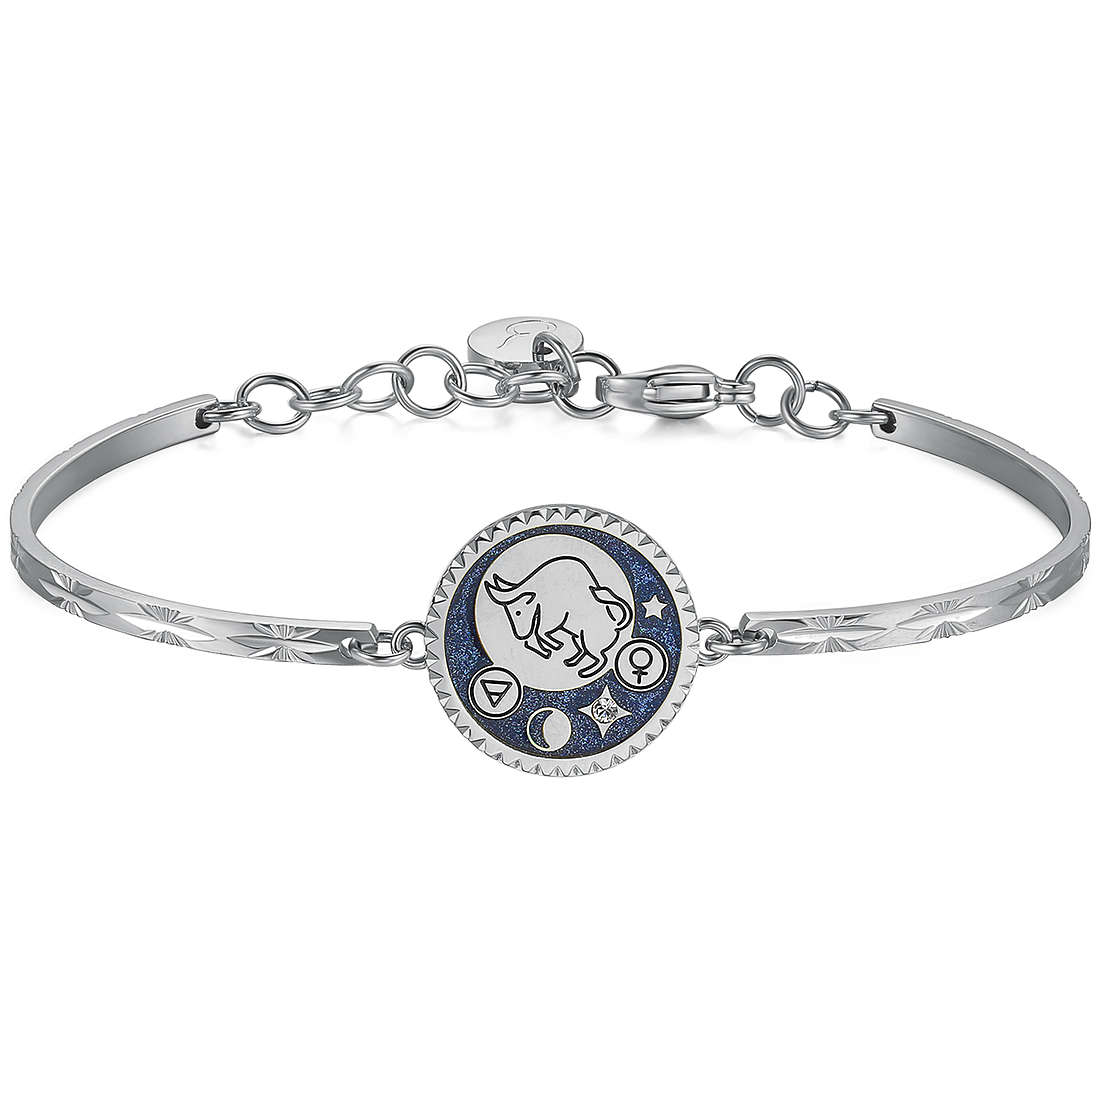 bracelet woman zodiac sign Taurus Brosway jewel Chakra BHK368